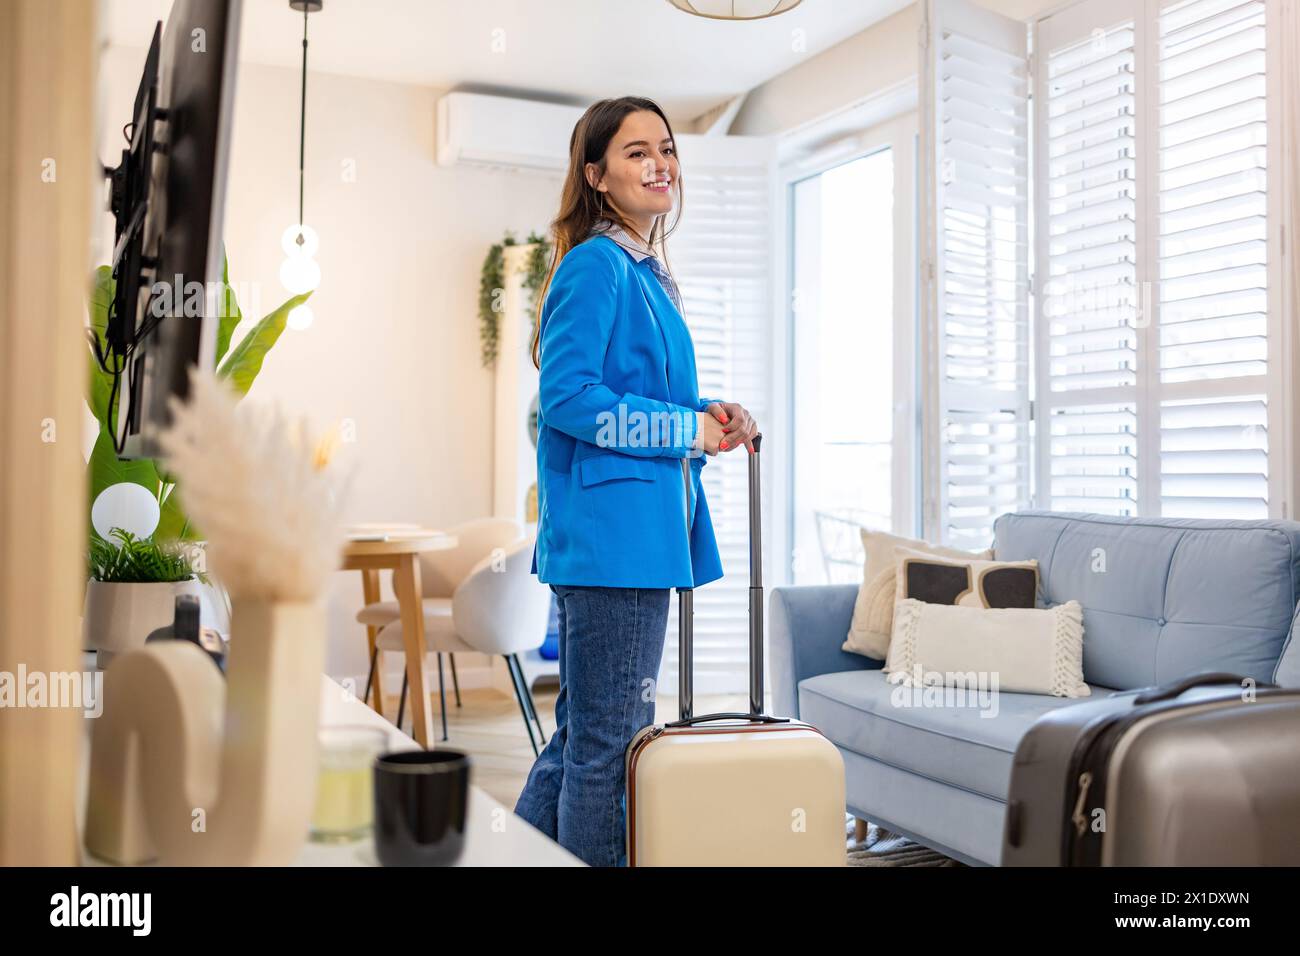 Jeune femme avec sa valise dans un appartement loué Banque D'Images